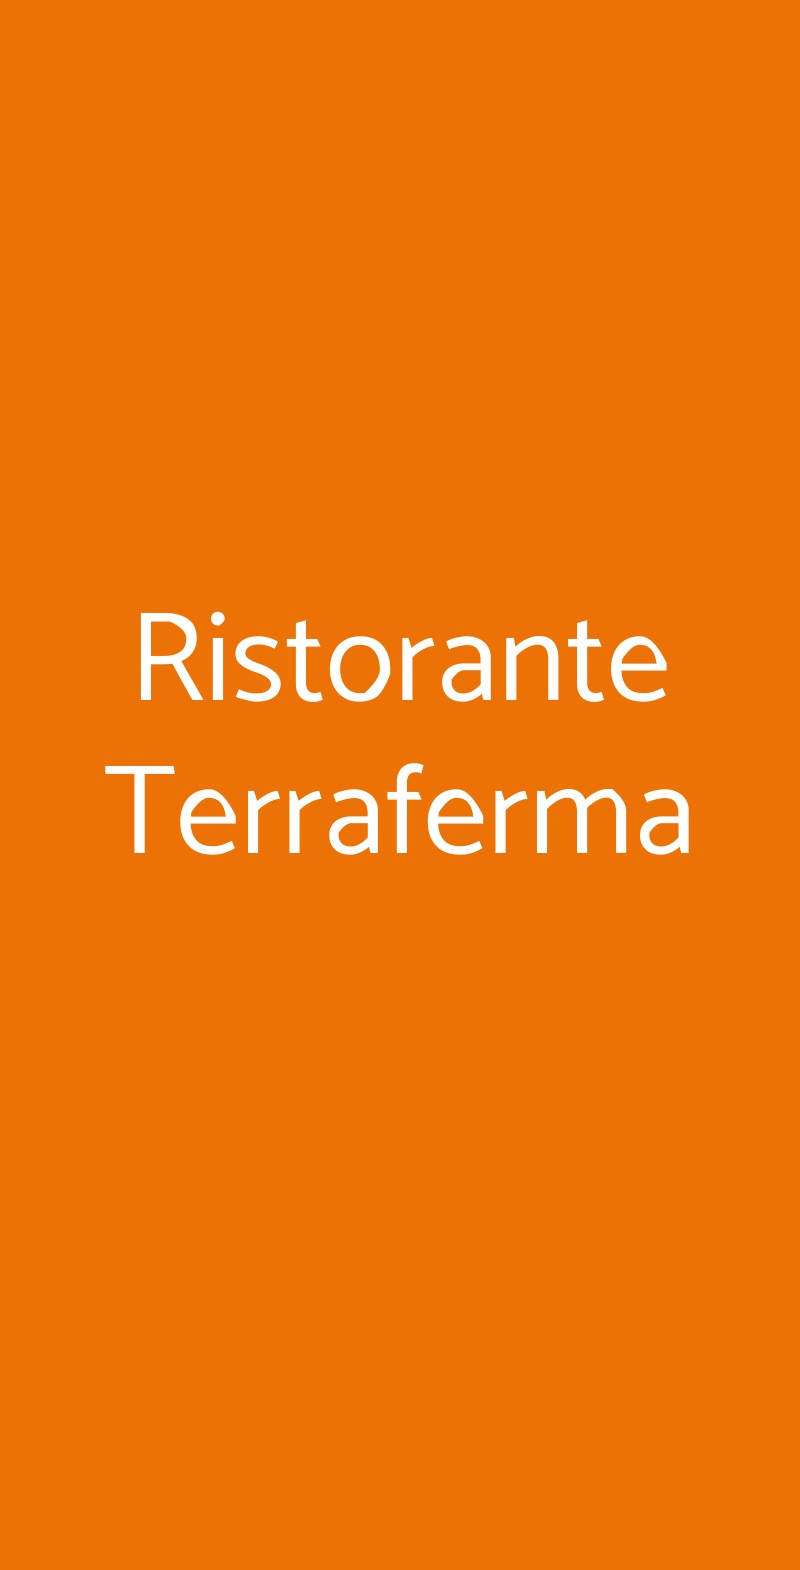 Ristorante Terraferma Milano menù 1 pagina